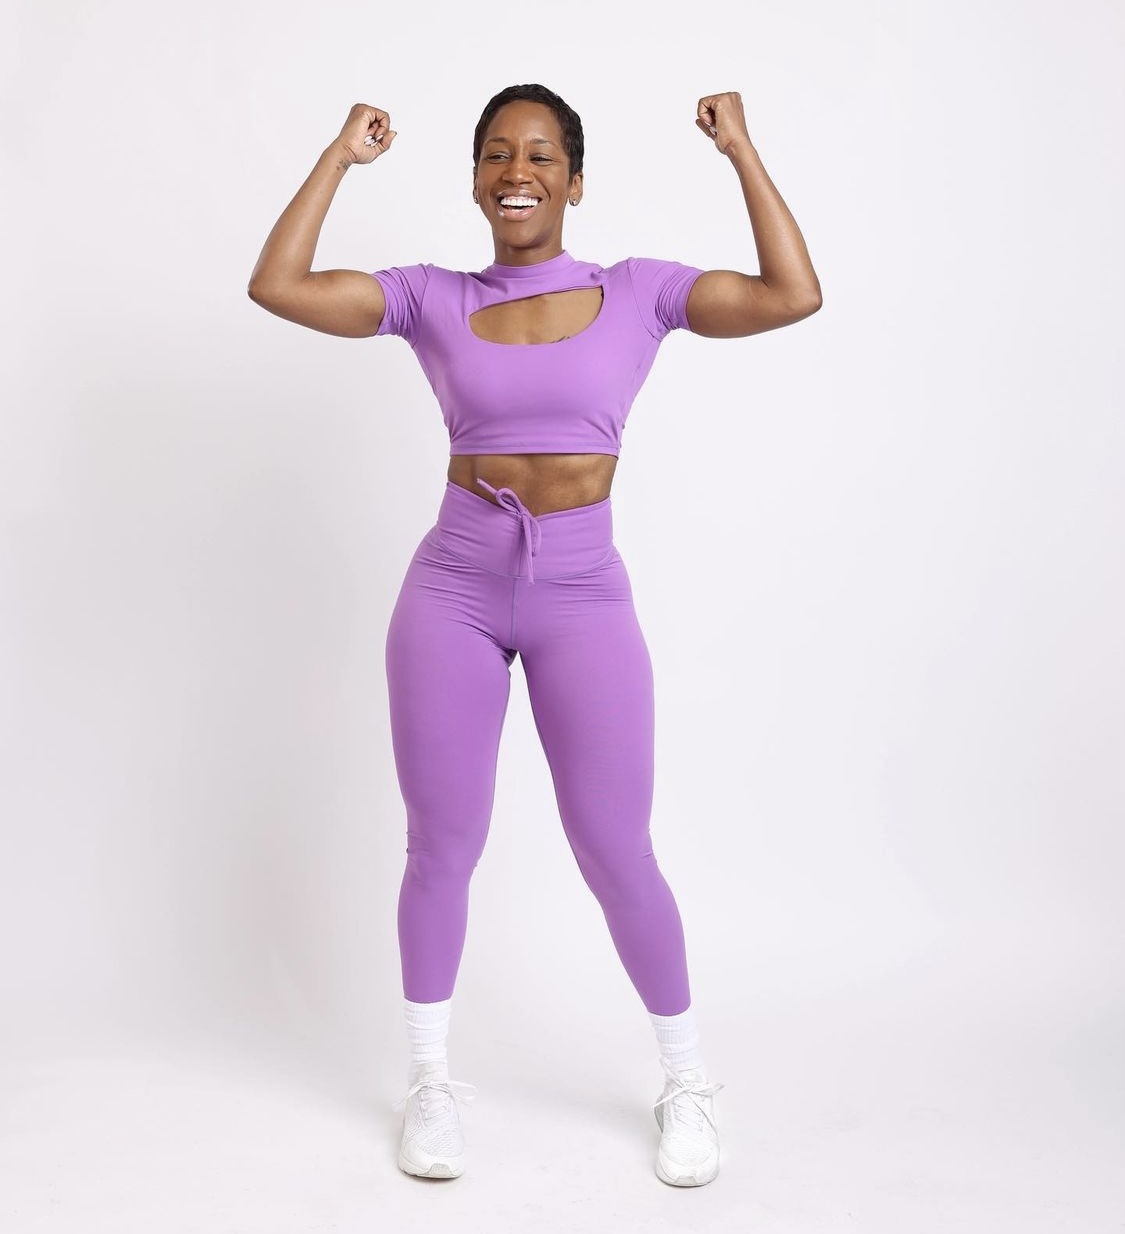 101 Top Women Fitness Trainers of Instagram - GOSS